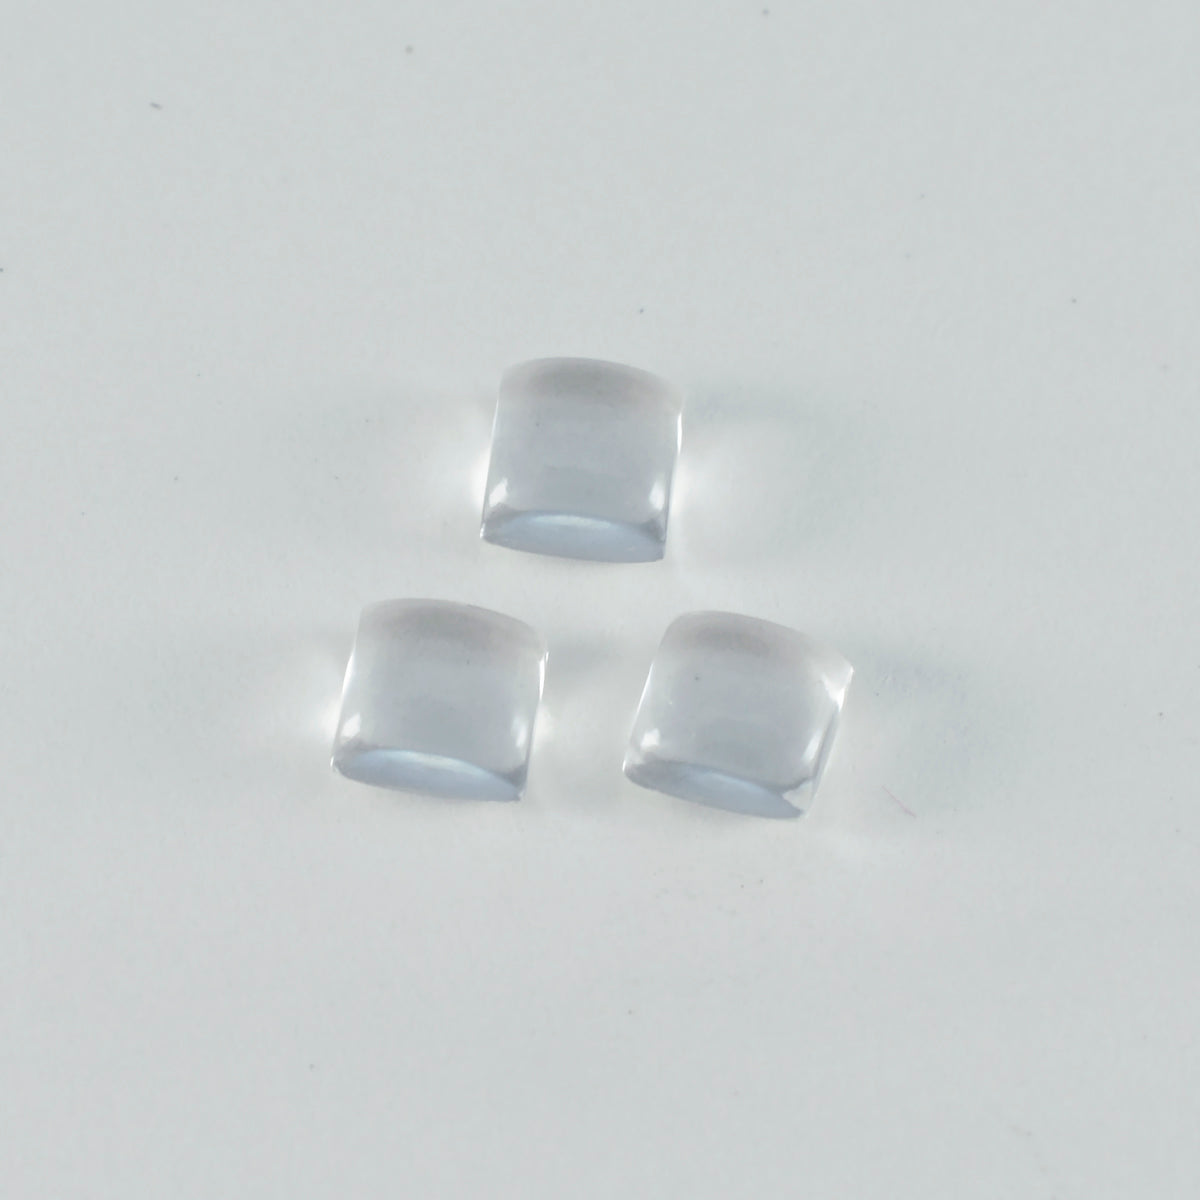 Riyogems 1PC White Crystal Quartz Cabochon 8x8 mm Square Shape astonishing Quality Loose Gem